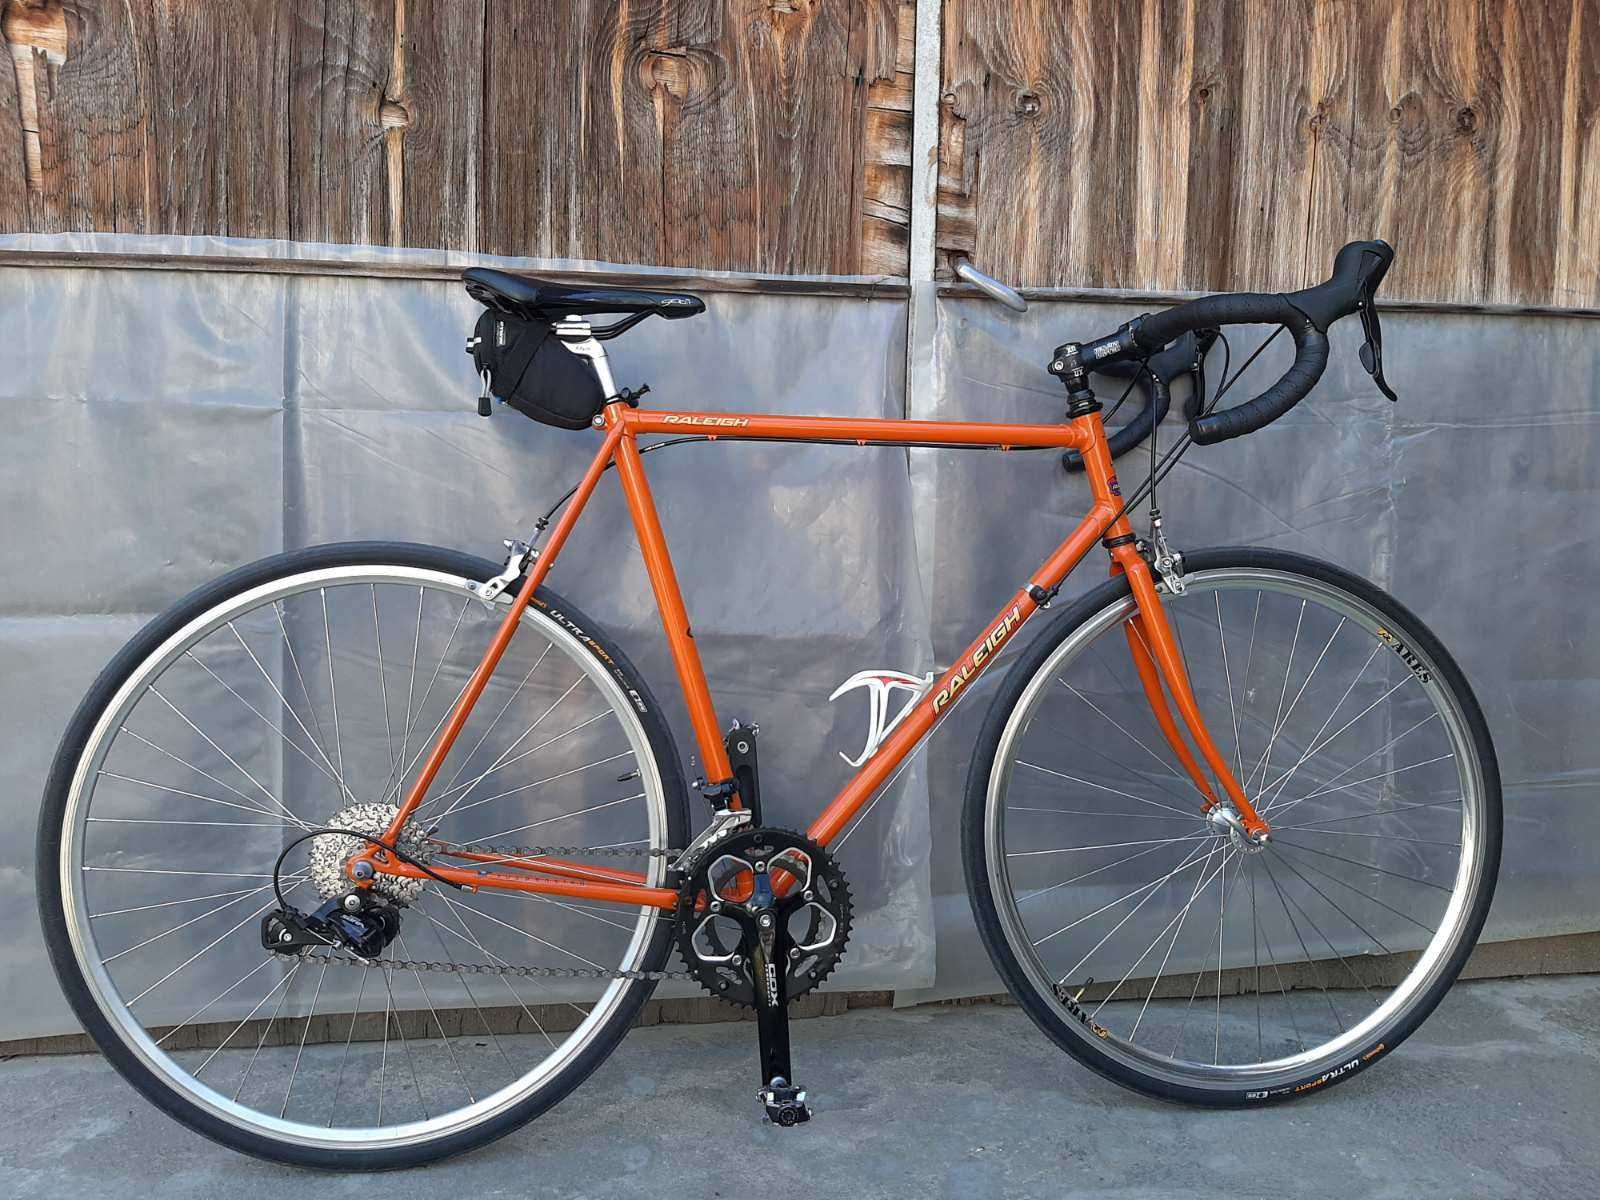 Шосейно колело "Raleigh", размер 57